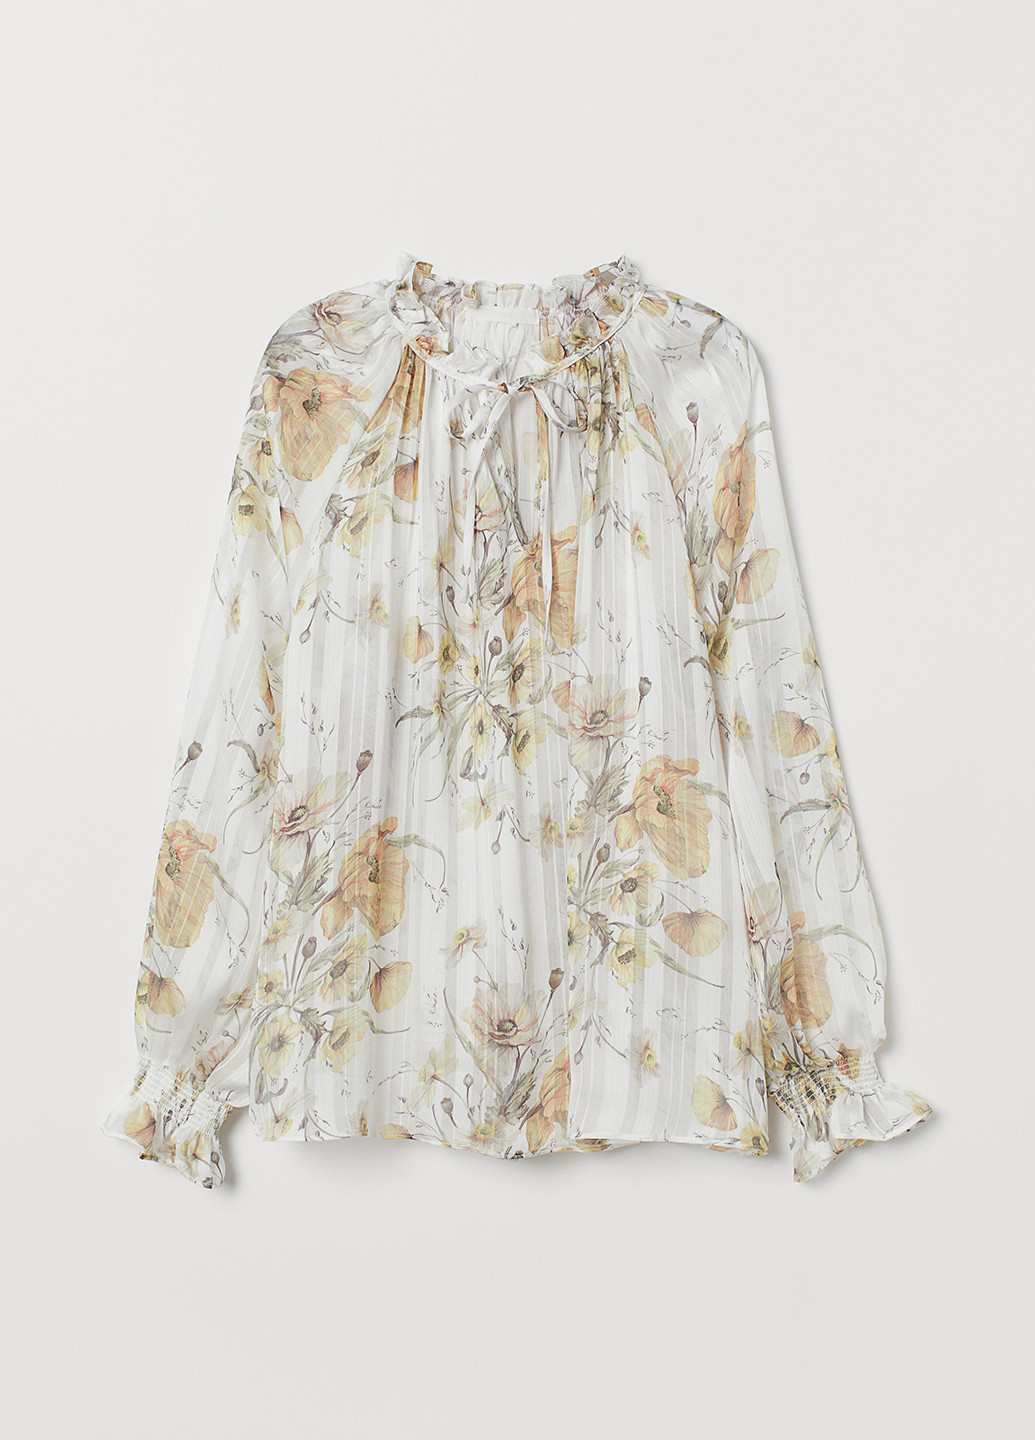 Светло-серая демисезонная блуза H&M